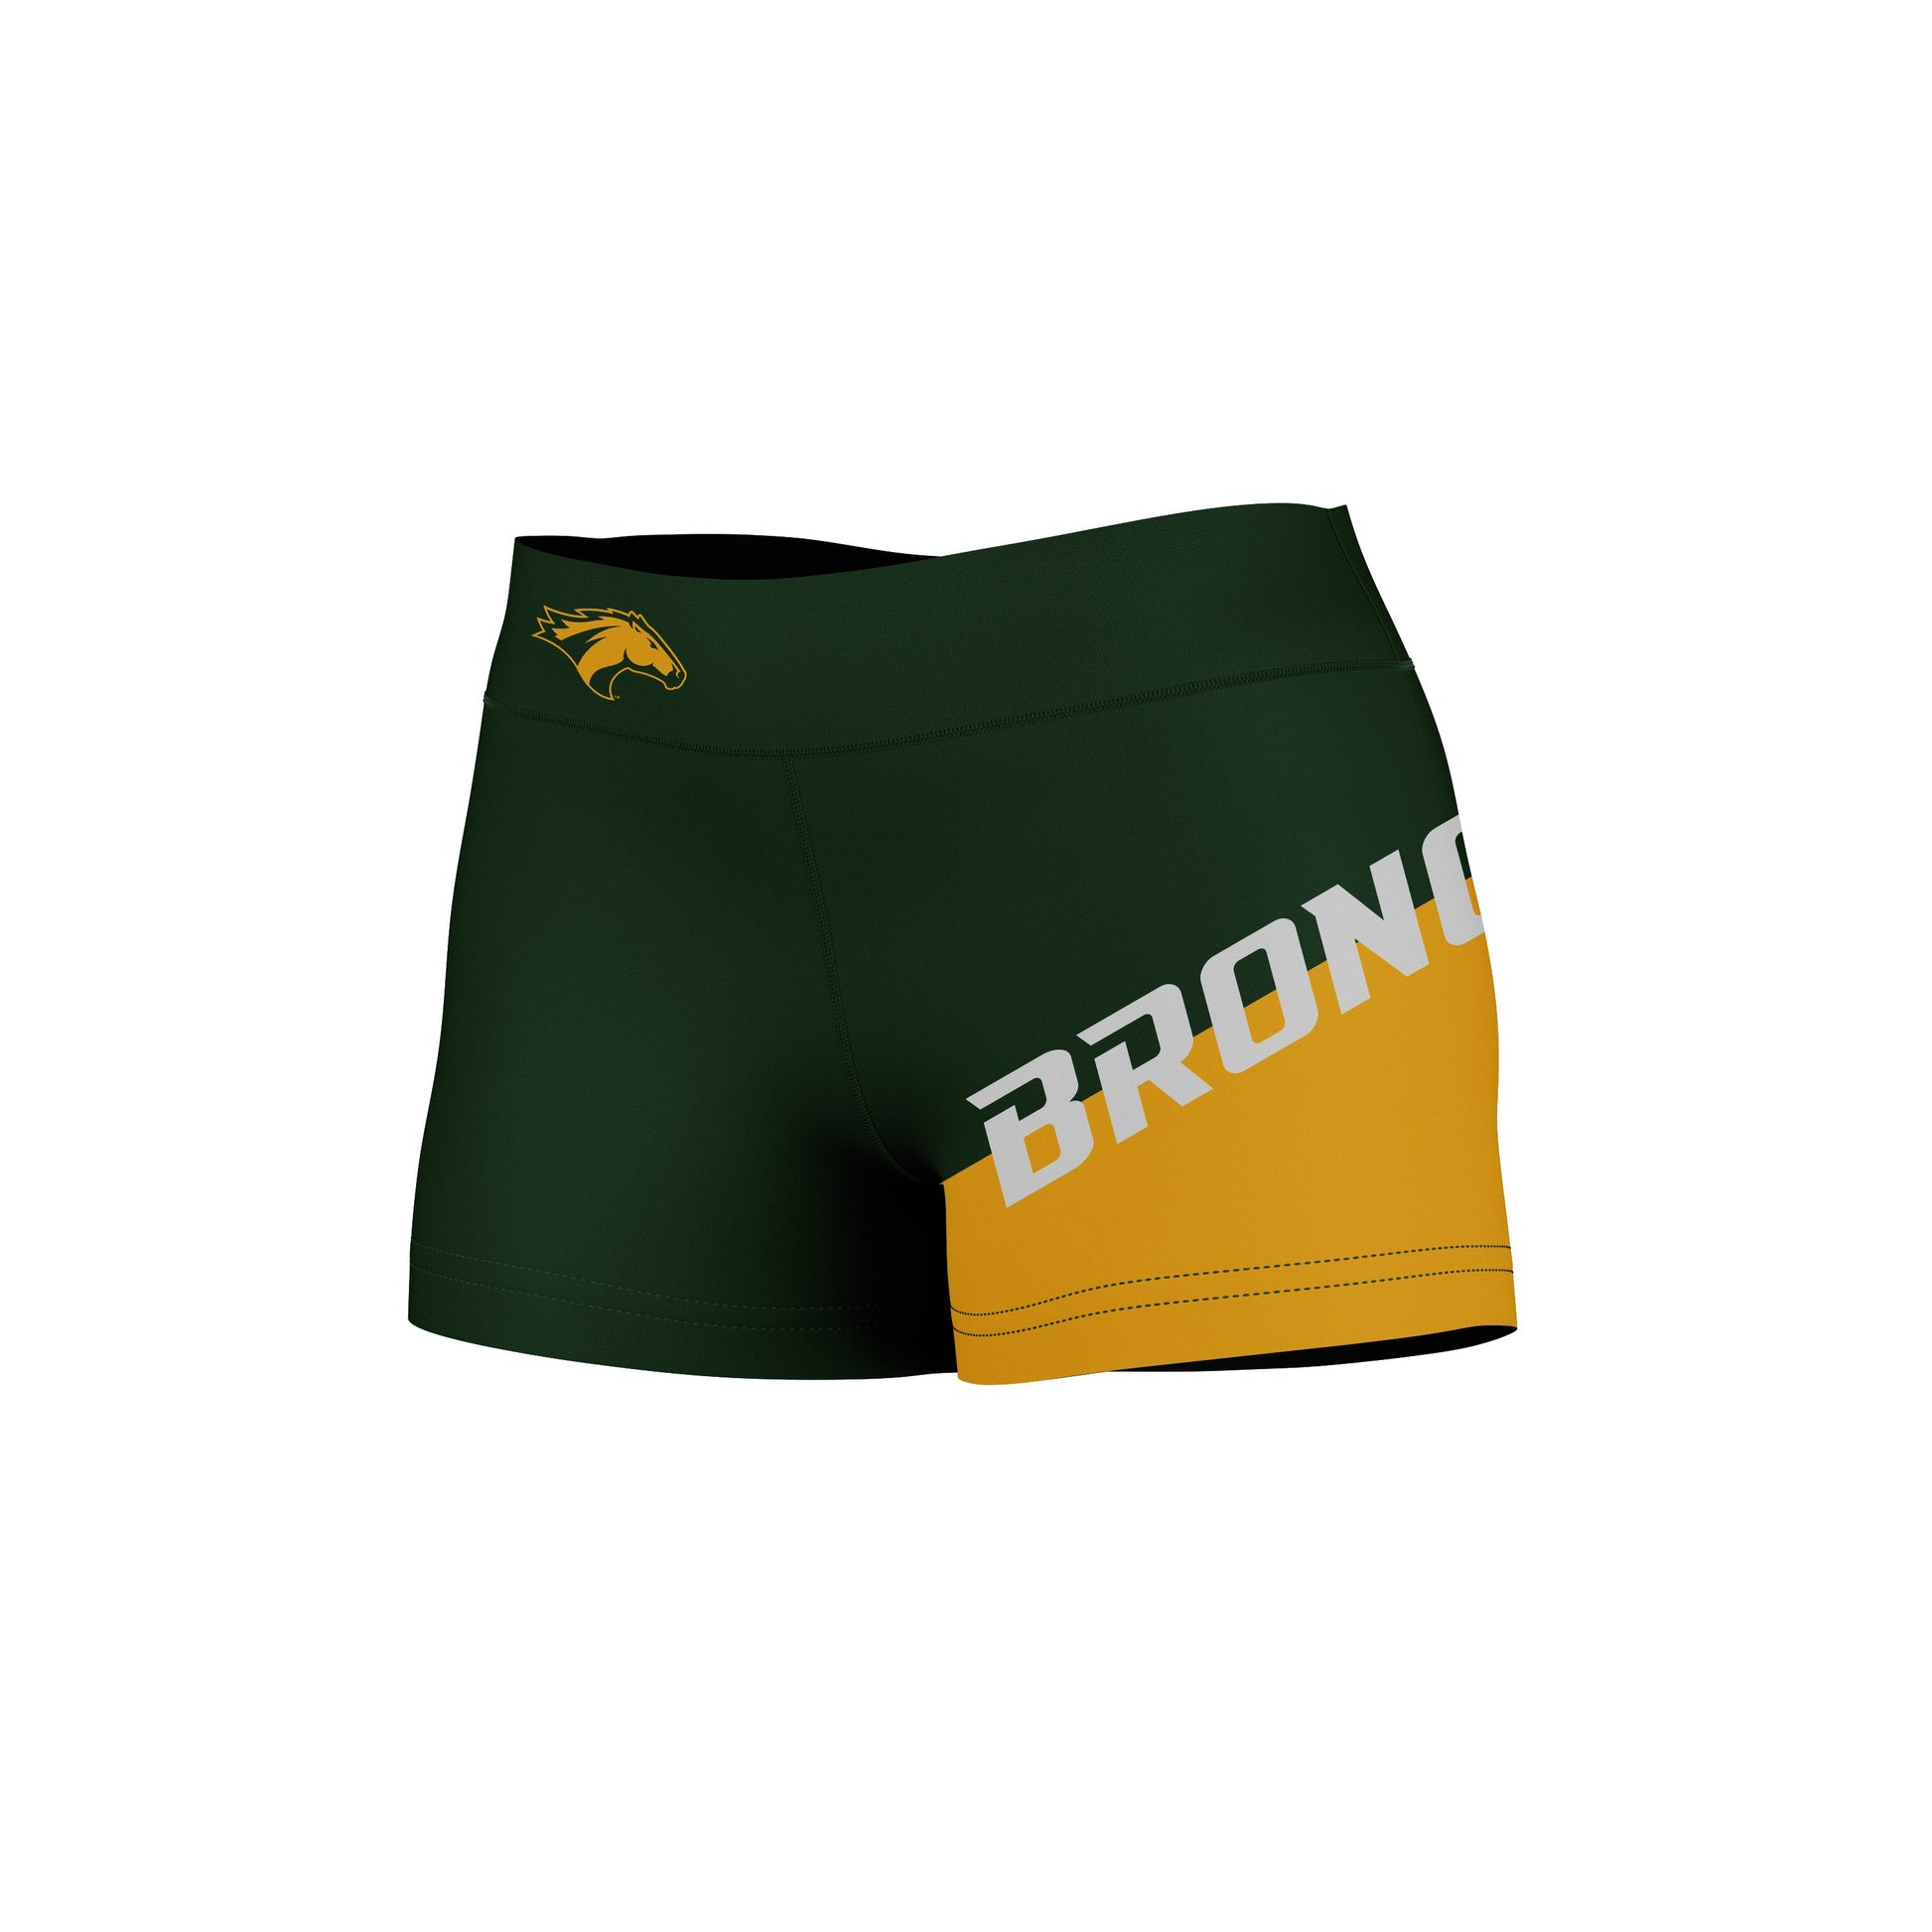 Cal Poly Pomona Broncos Vive La Fete Game Day Collegiate Leg Color Block Women Green Gold Optimum Yoga Short - Vive La F̻te - Online Apparel Store